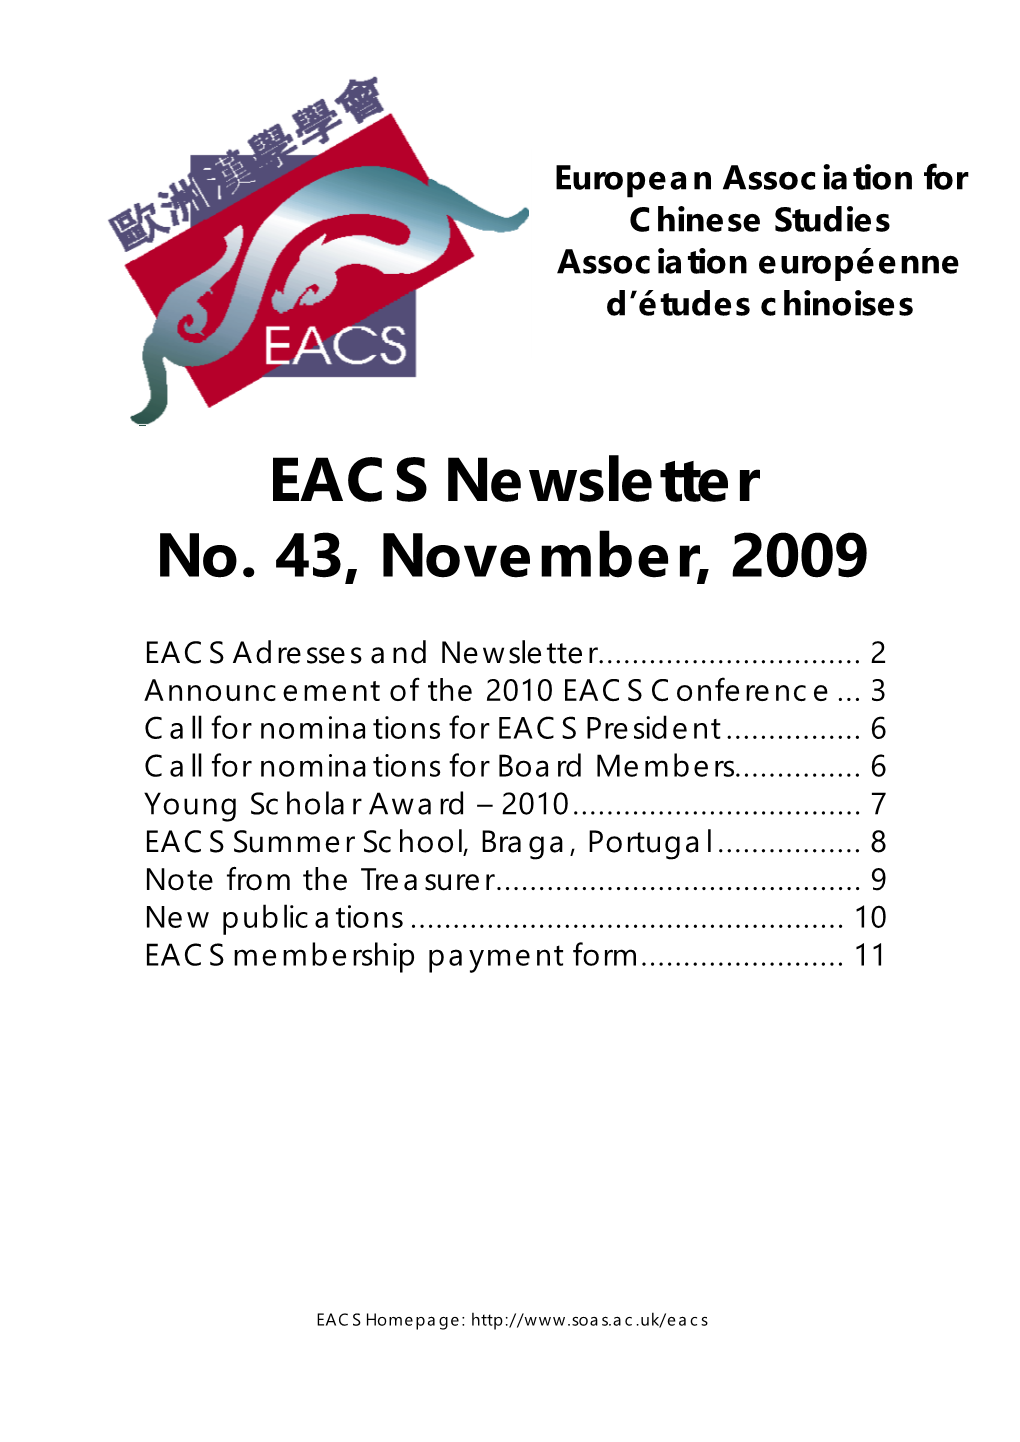 EACS Newsletter No. 43, November, 2009